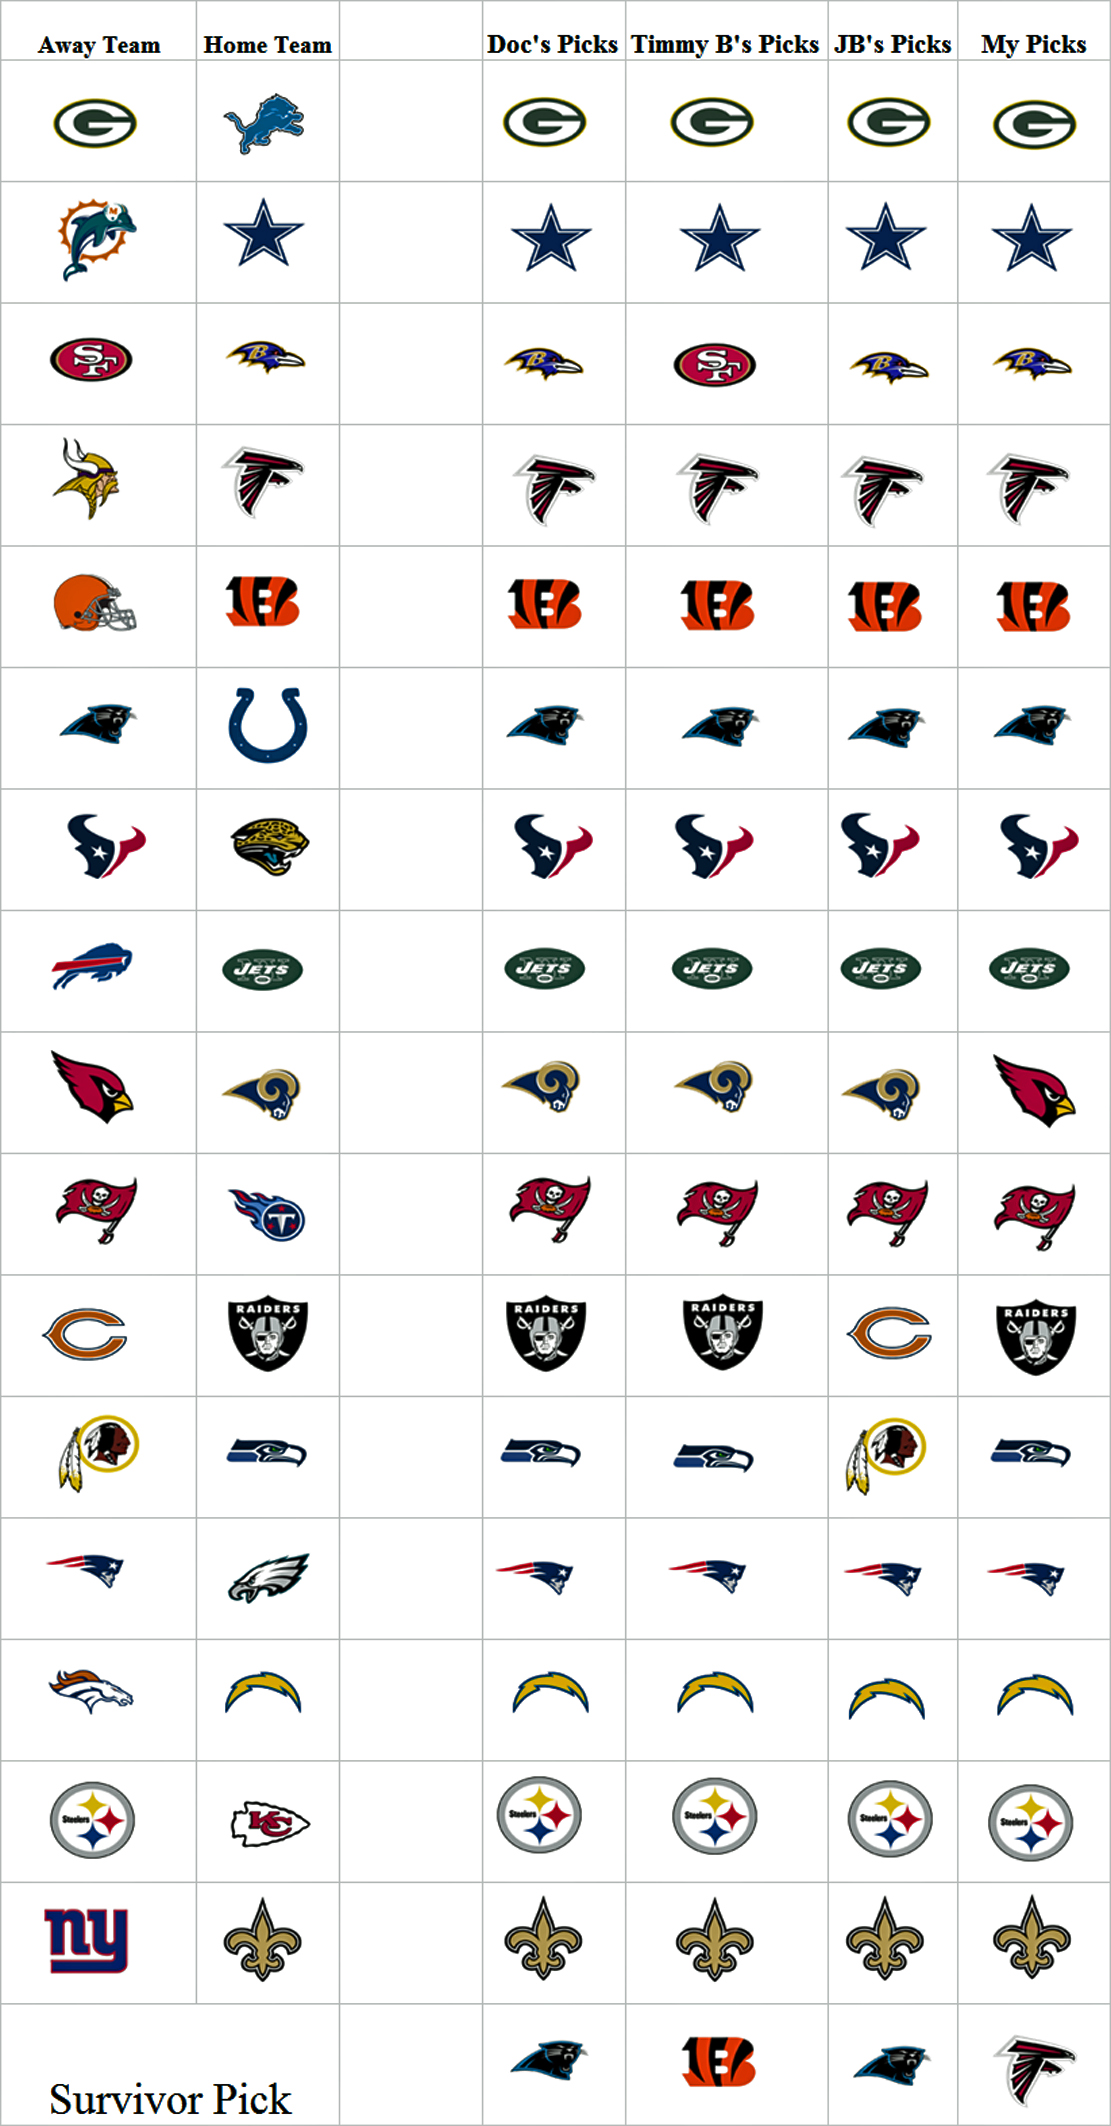 Week 12 NFL Picks